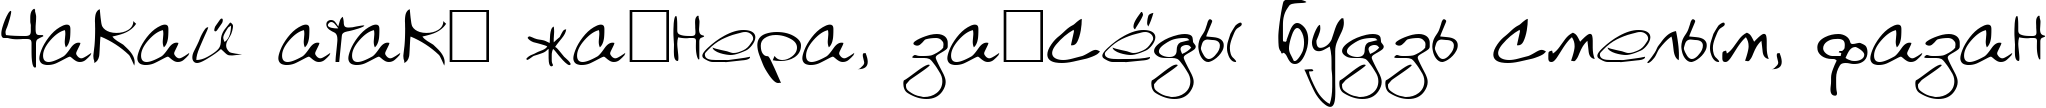 Пример написания шрифтом Scrawl текста на белорусском